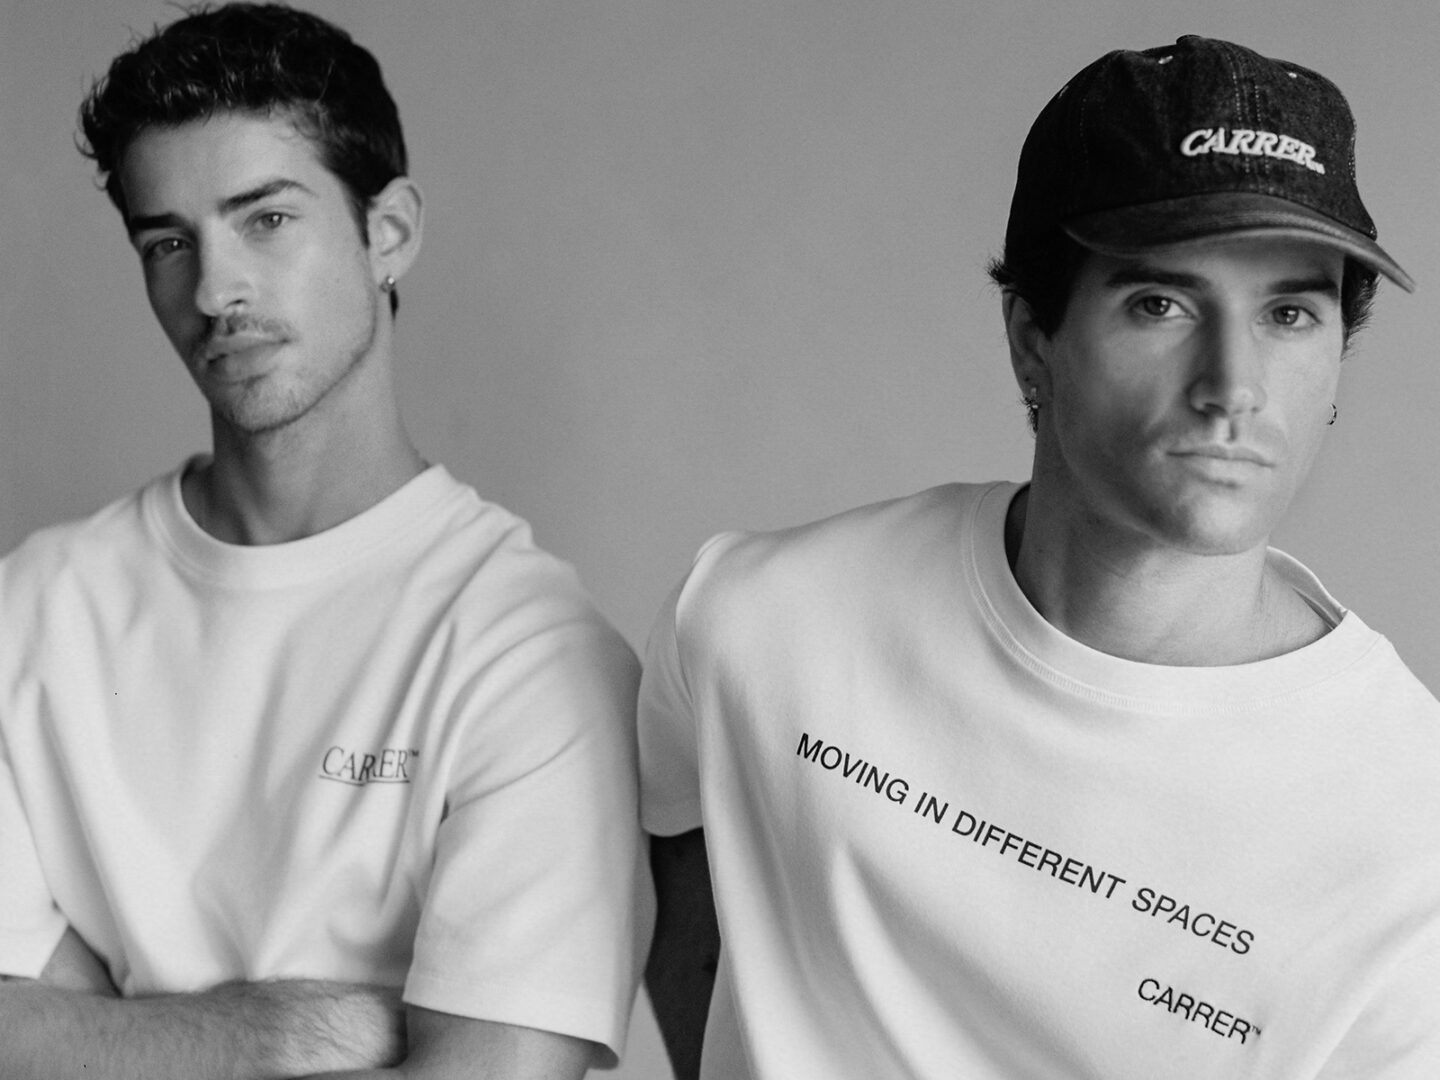 ¡BREAKING NEWS! Manu Ríos y Marc Forné lanzan hoy mismo su marca de ropa Carrer